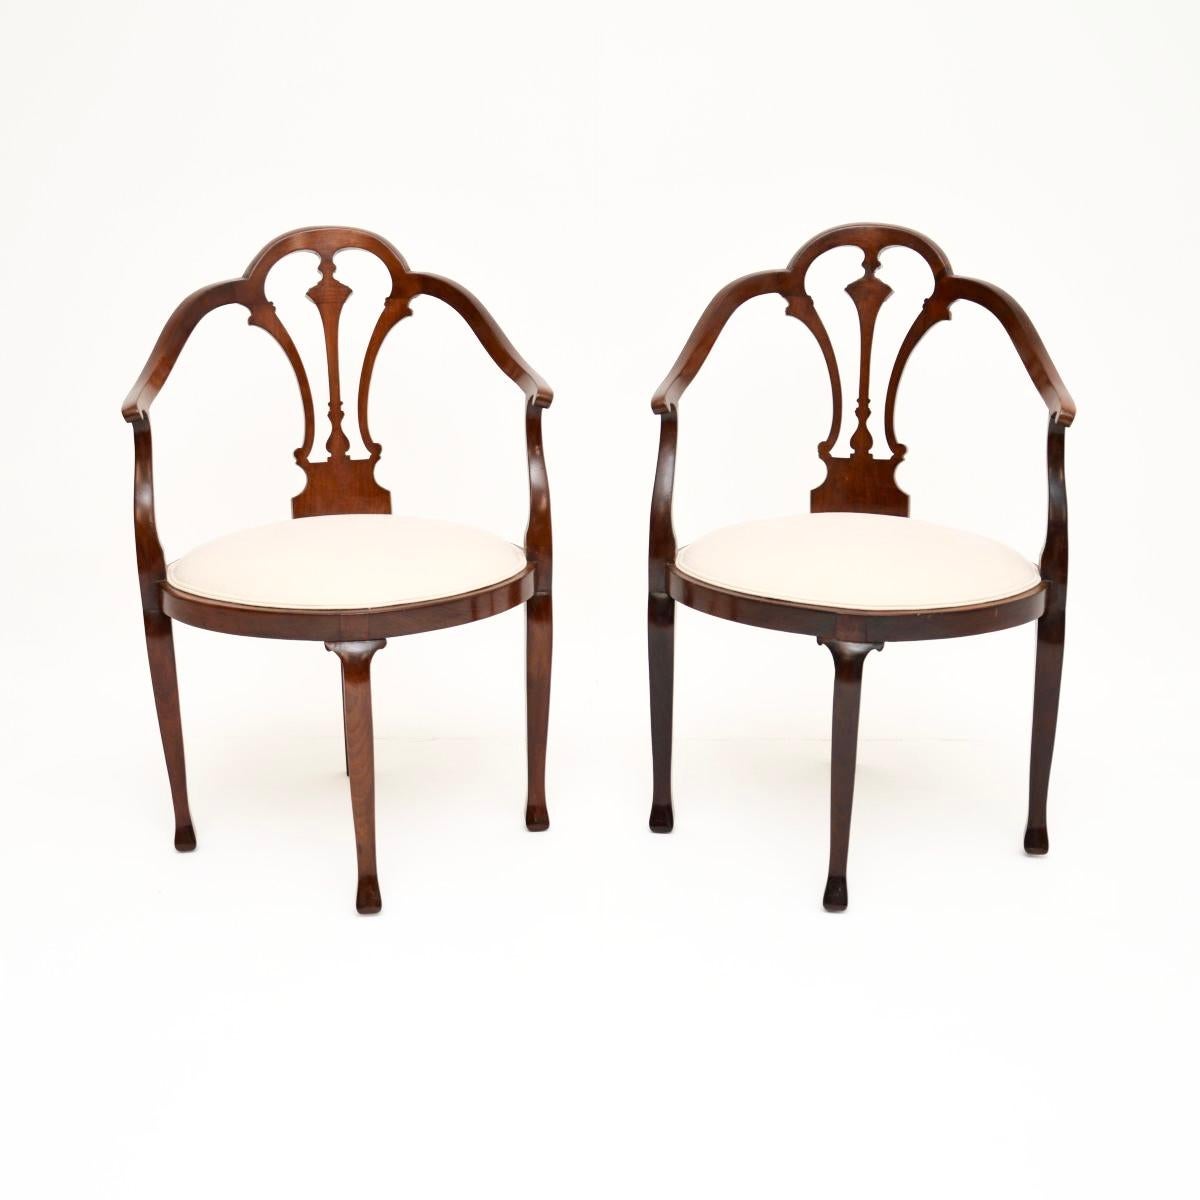 Une belle paire de fauteuils ouverts anciens de l'époque édouardienne. Fabriqués en Angleterre, ils datent de la période 1900-1910.

La qualité est excellente et ils sont de belle taille. Ils conviendraient très bien à divers contextes dans la